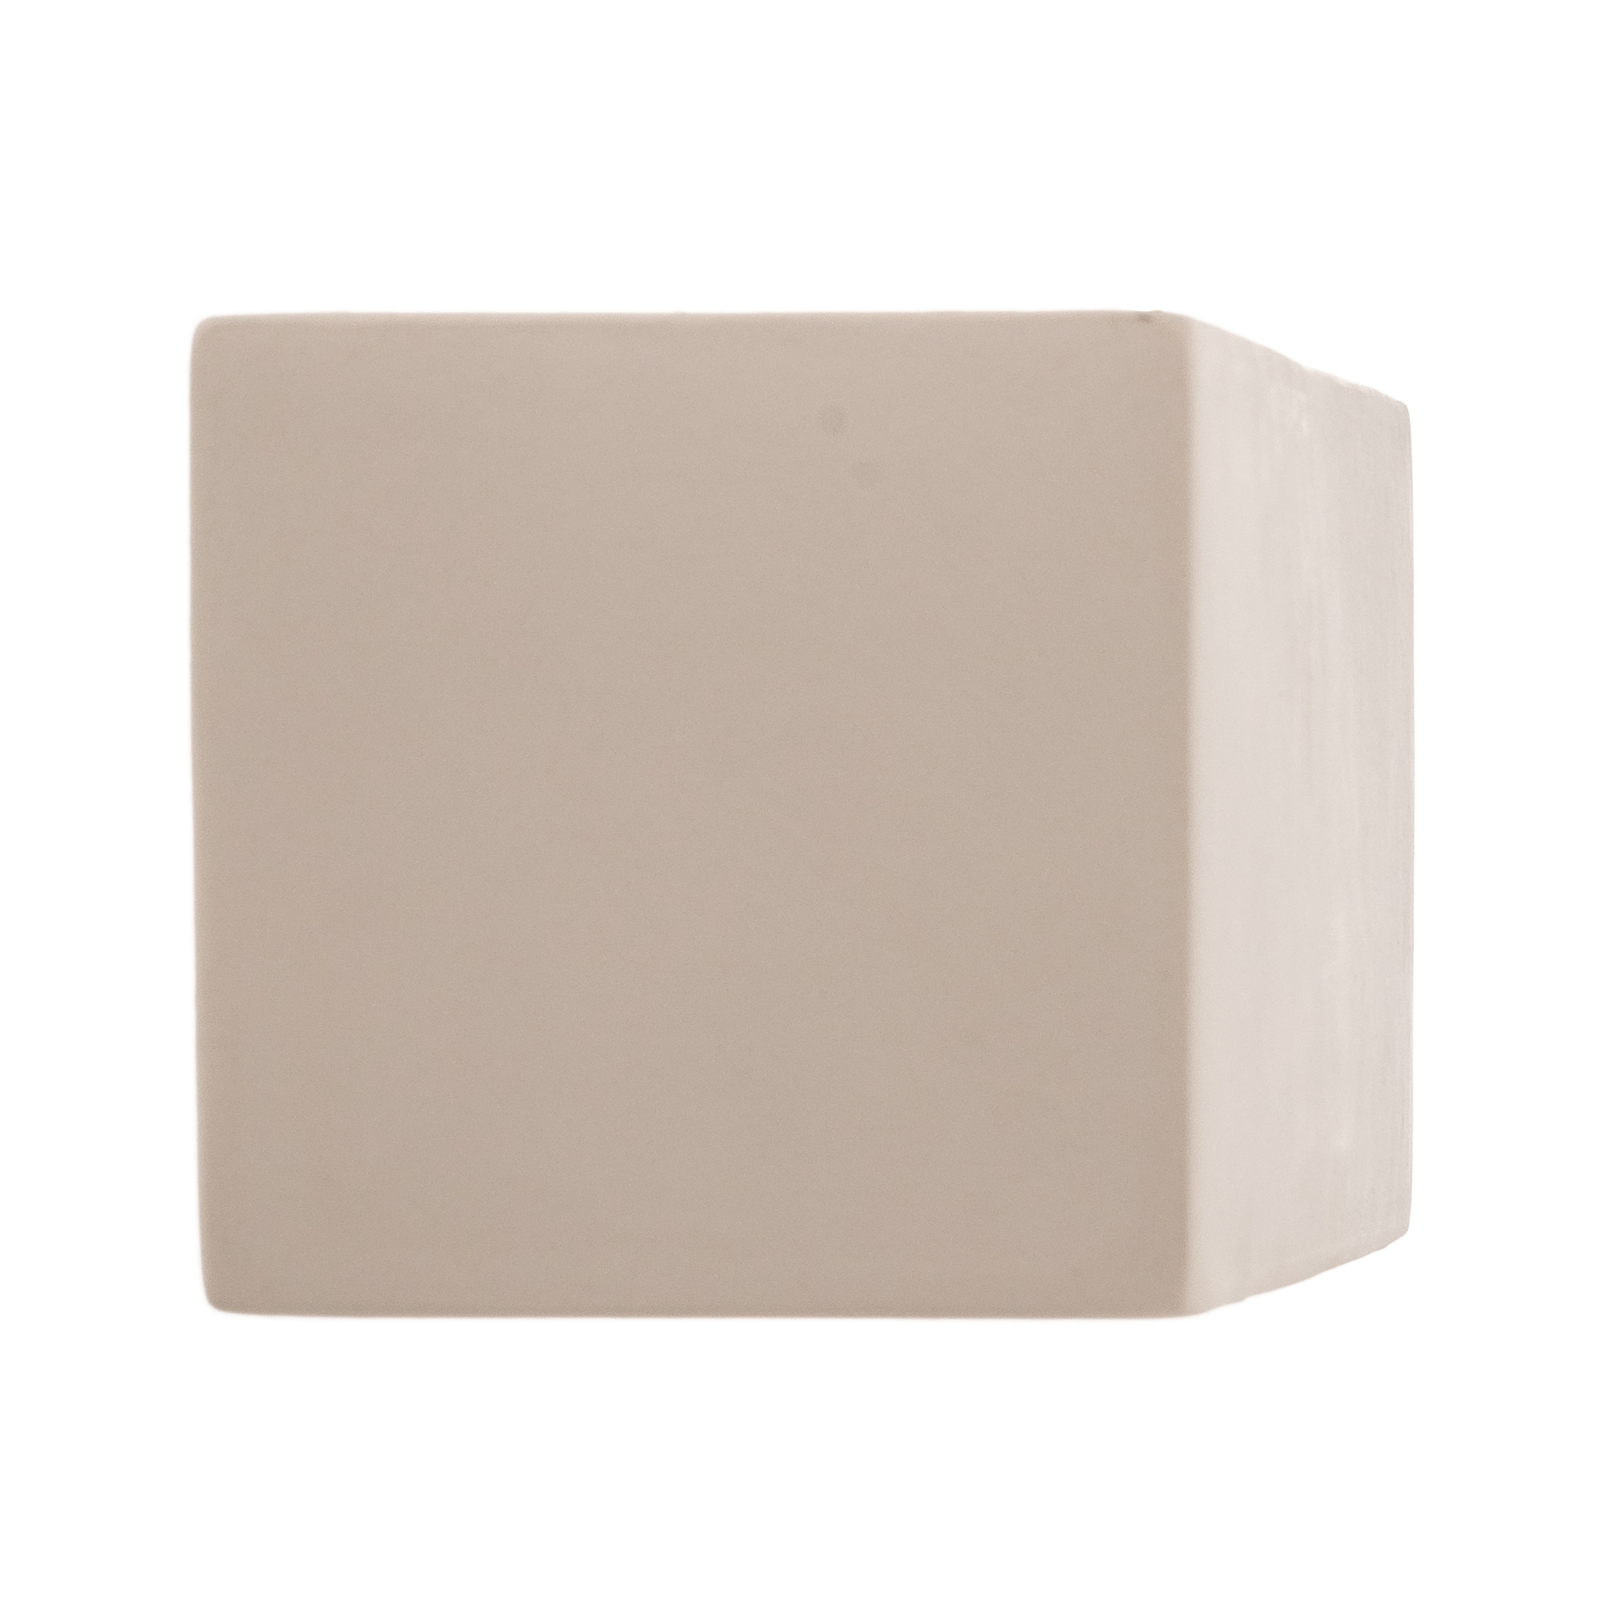 Kinkiet Cube Line up/down z ceramiki, biały